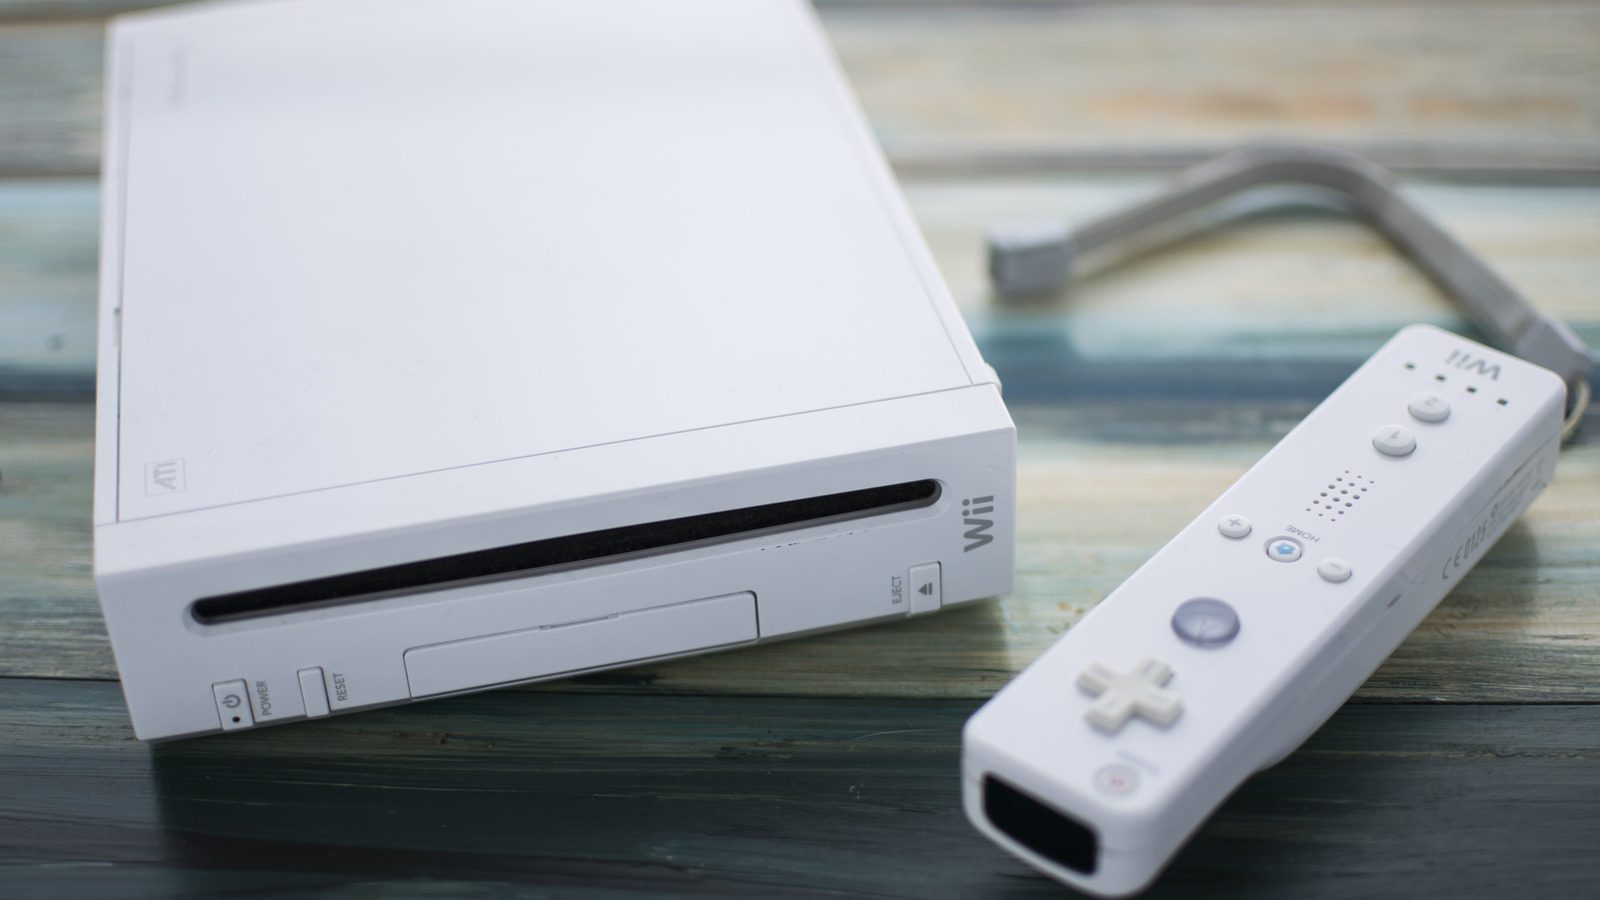 Hala Nintendo Wii’den Domino’s Siparişi Verebilirsiniz (Biraz Çalışmayla)